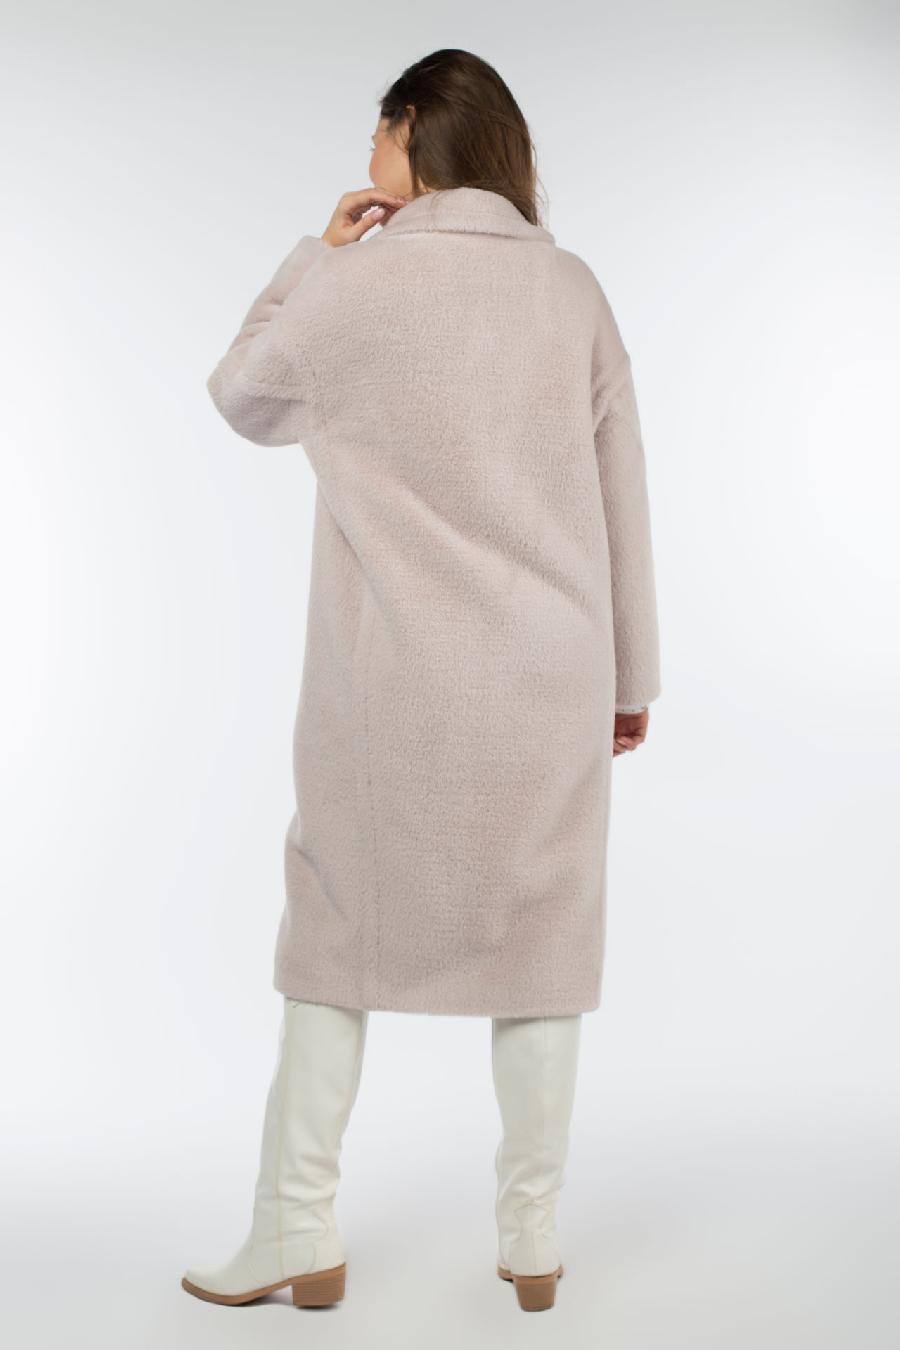 02-3025 Пальто женское утепленное Ворса светло-сиреневый